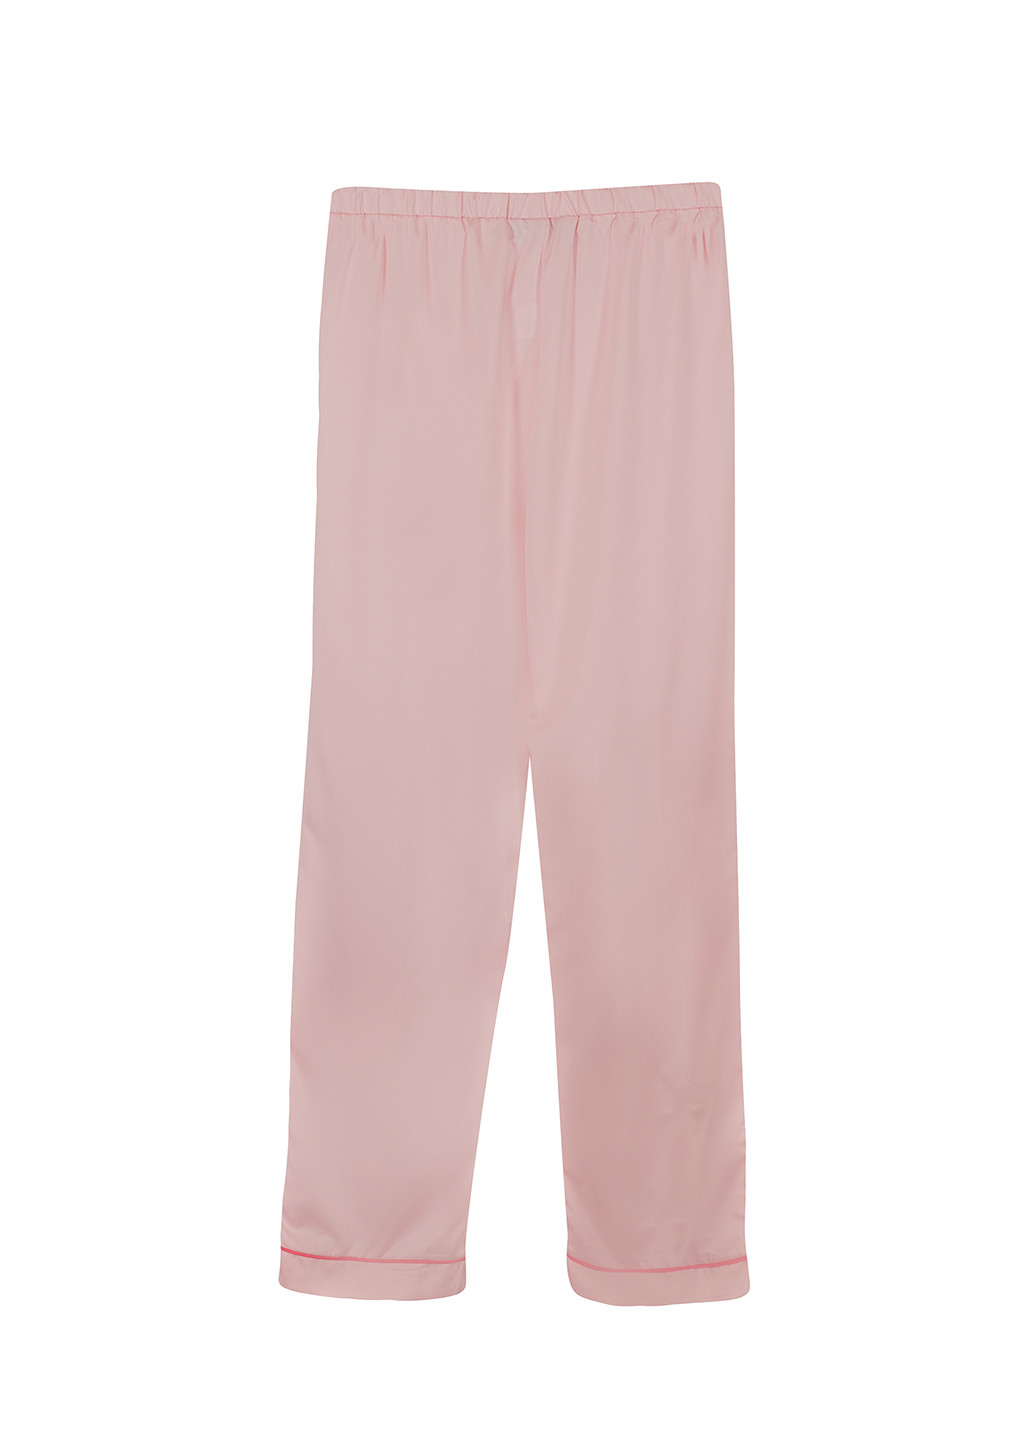 Розовая всесезон пижама (рубашка, брюки) рубашка + брюки Loungeable